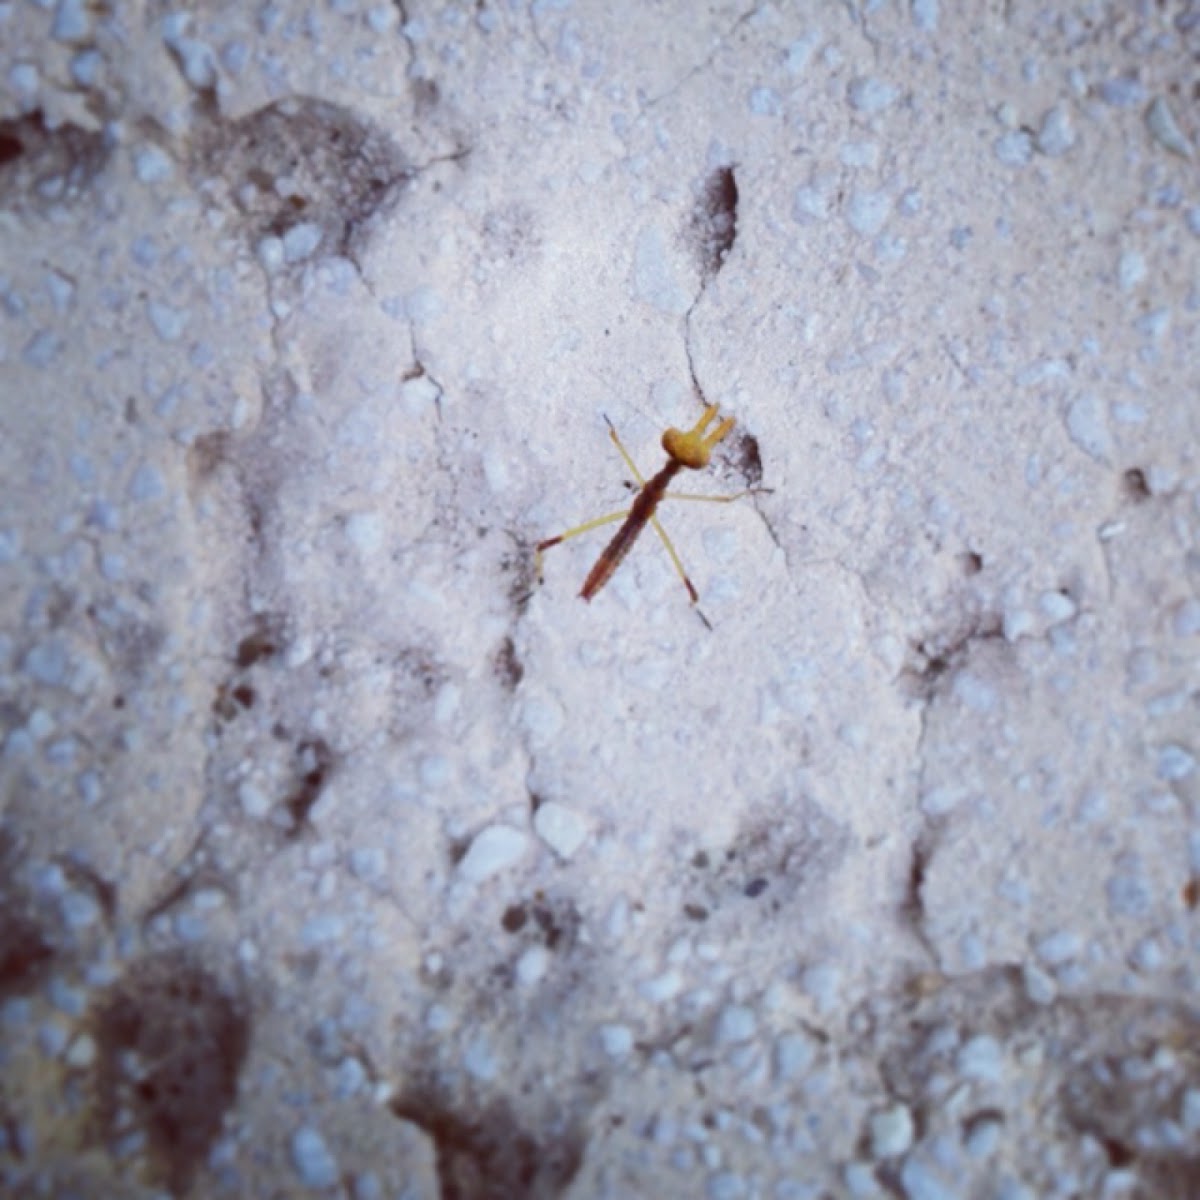 Baby Praying Mantis